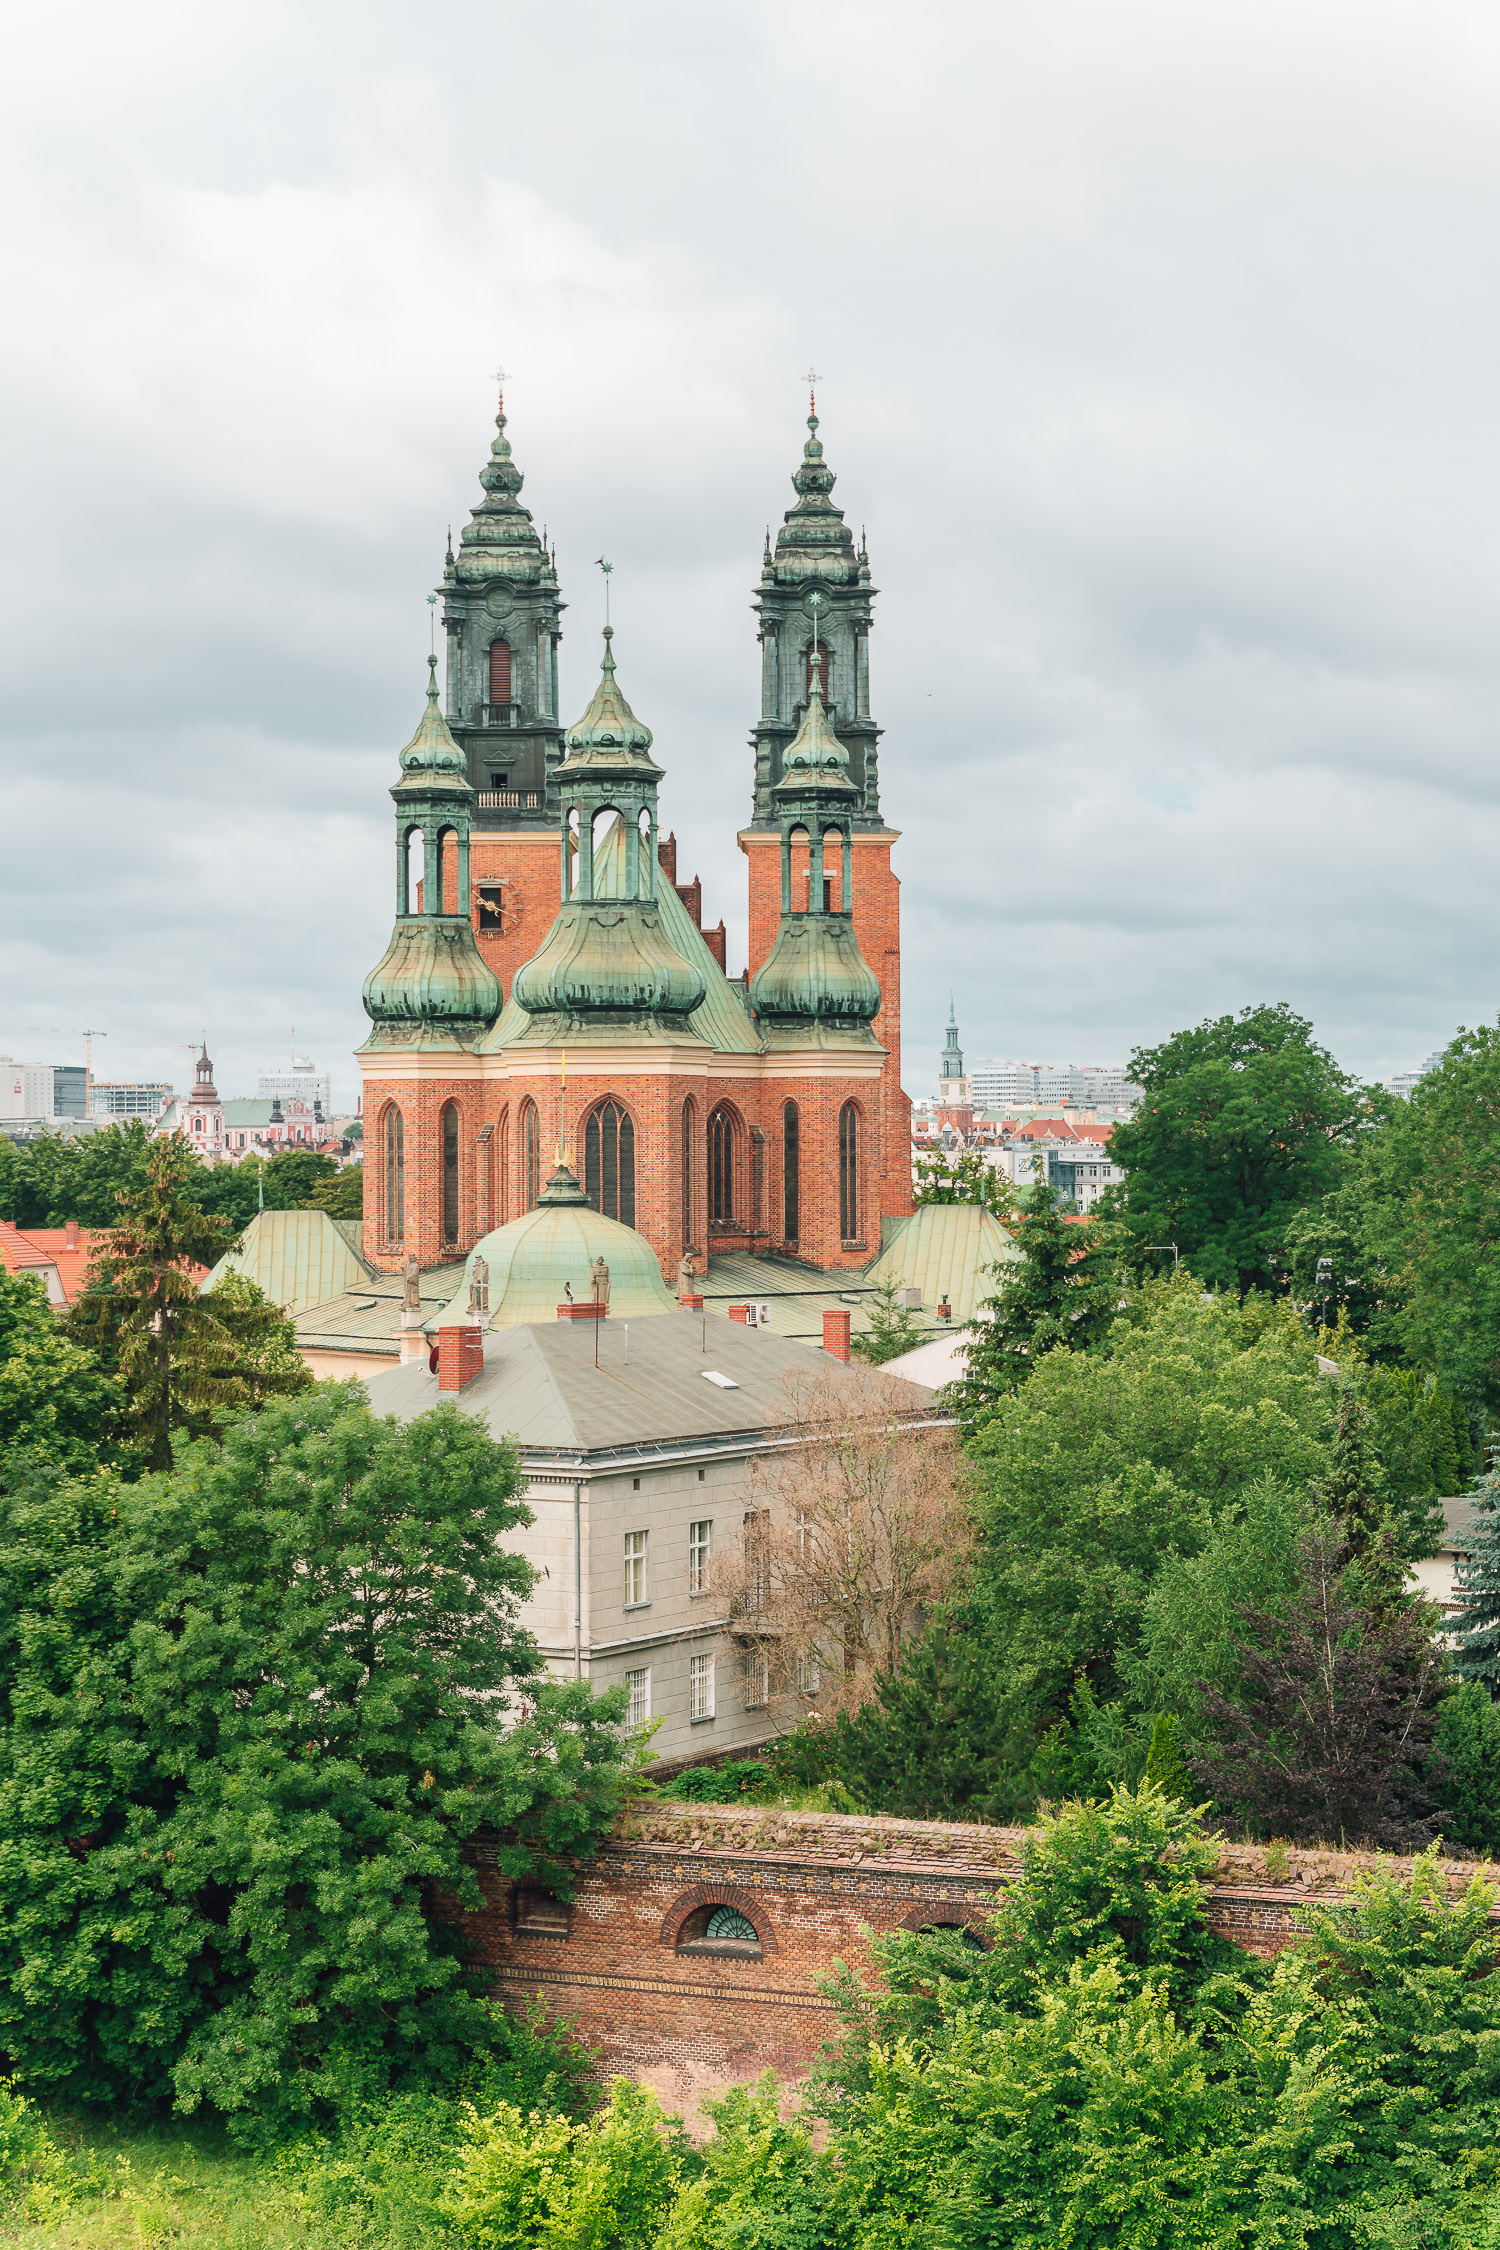 Poznań Cathedral, Ostrów Tumski.